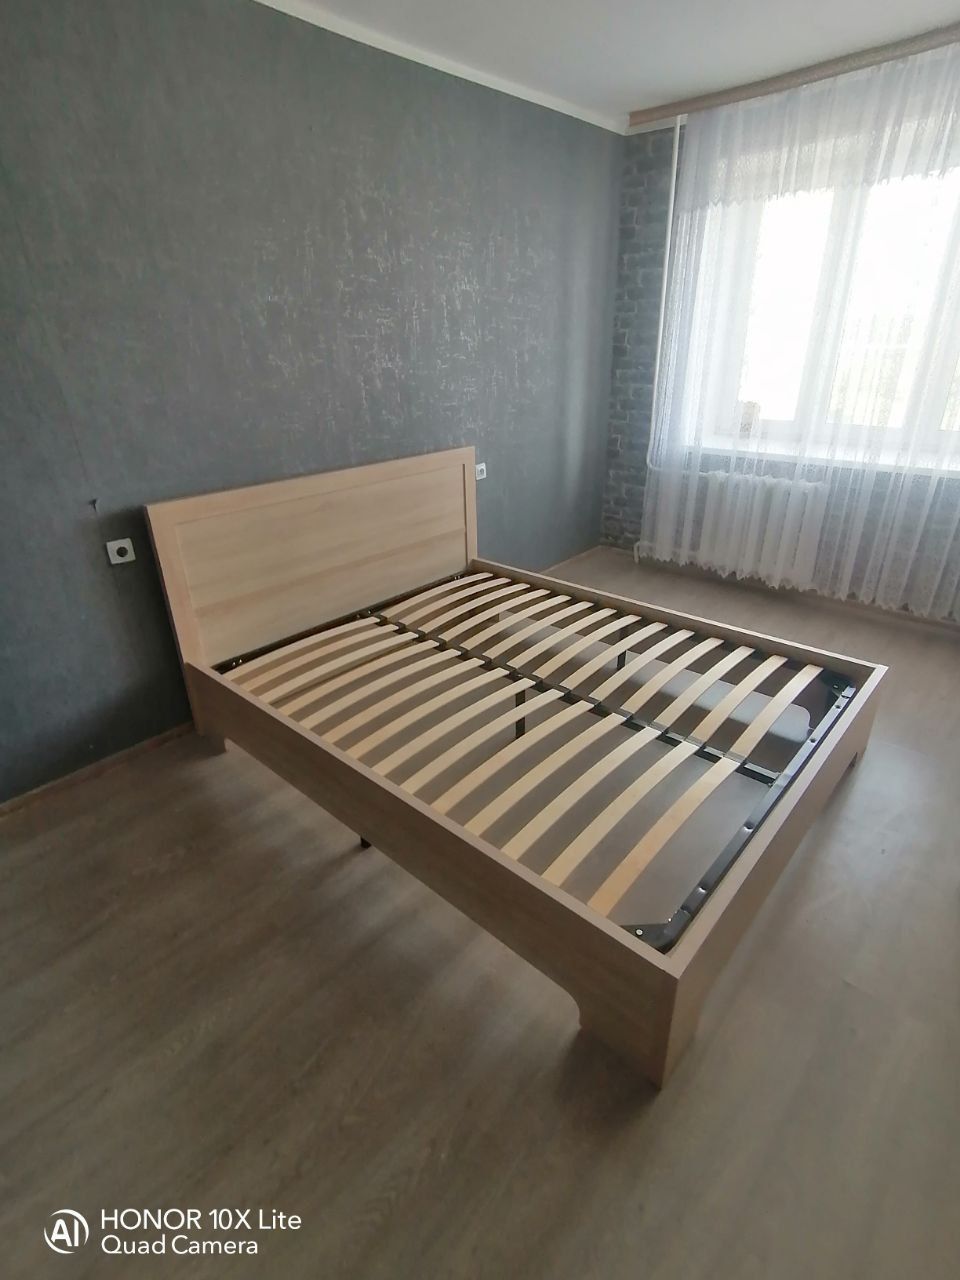 Односпальная кровать "Мальта" 90 х 200 с подъемным механизмом цвет венге / punto 06